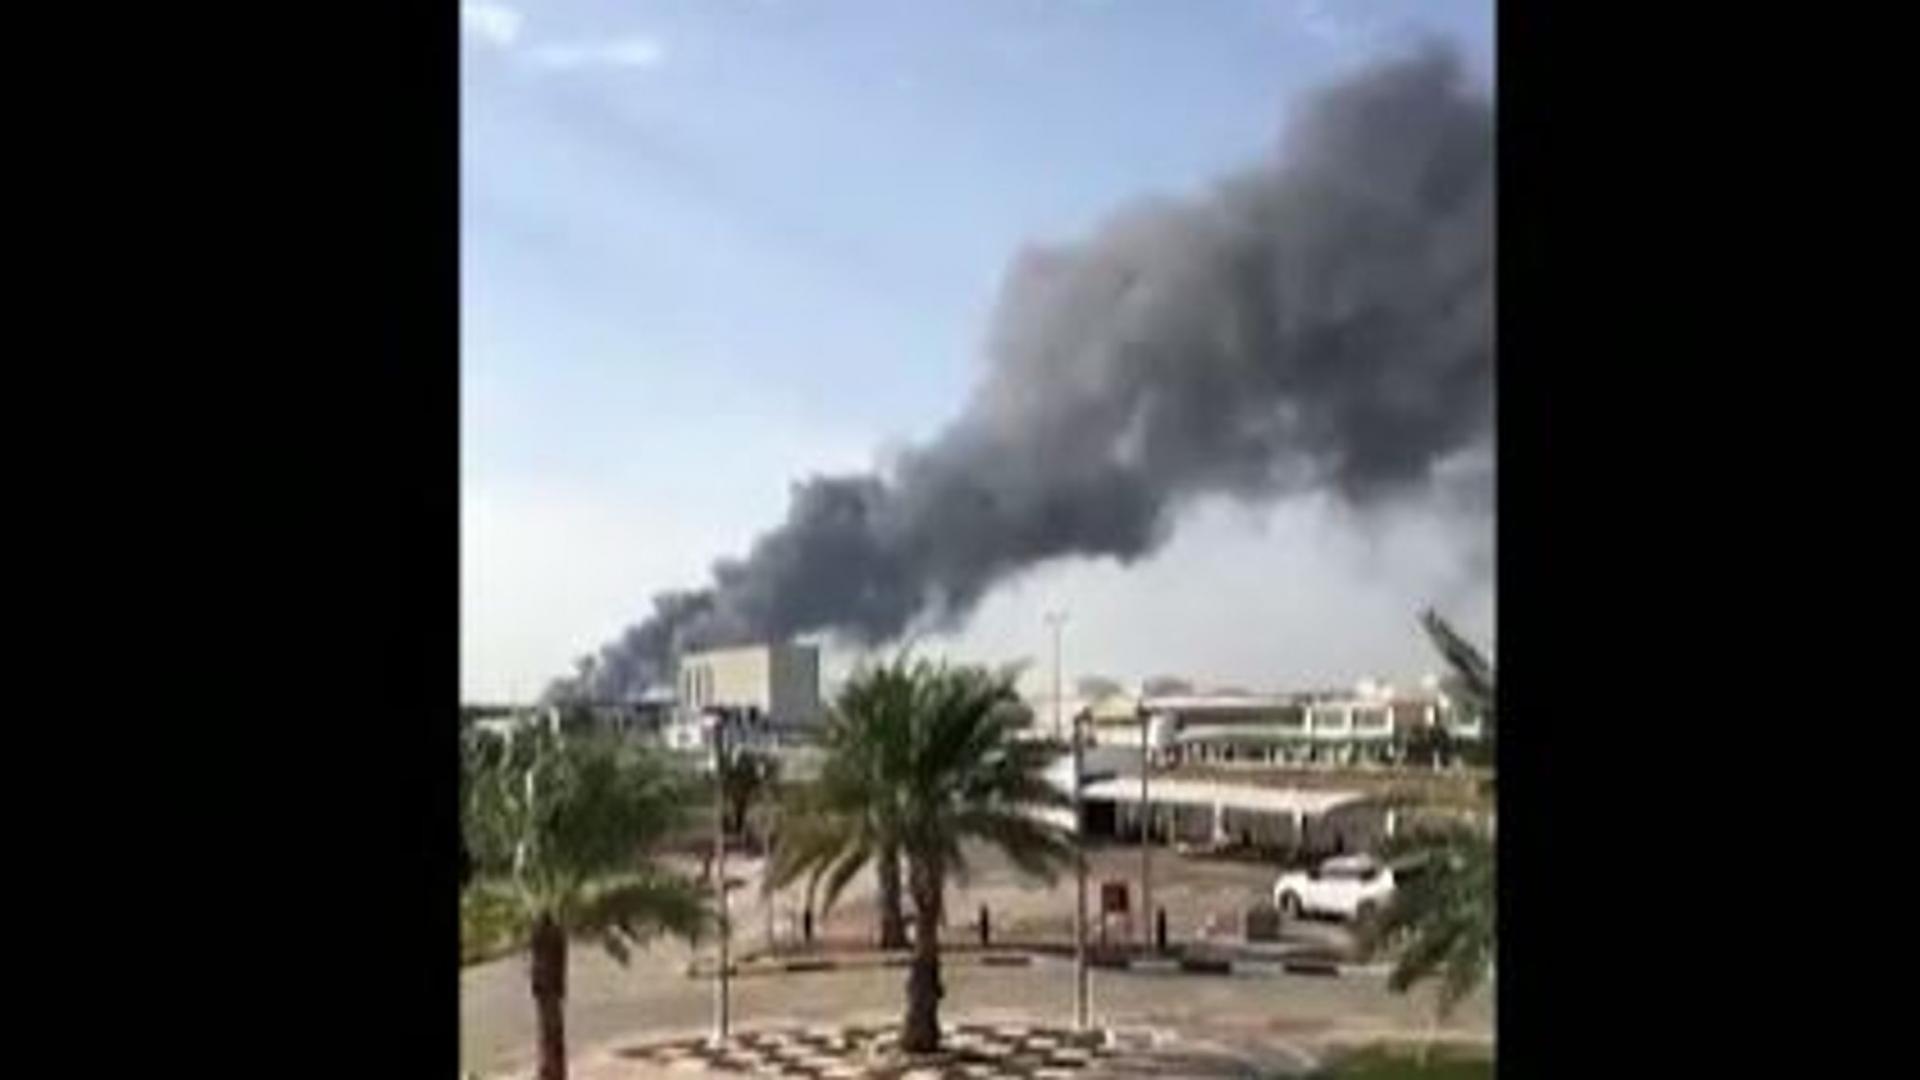 EAU: Attacchi con droni a Abu Dhabi, almeno 3 morti